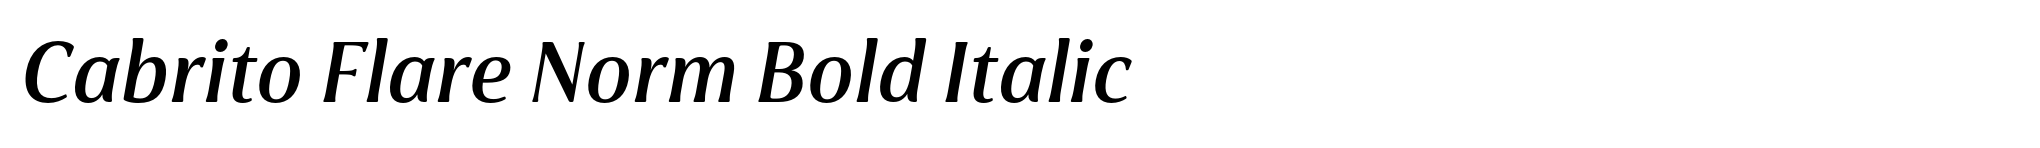 Cabrito Flare Norm Bold Italic image